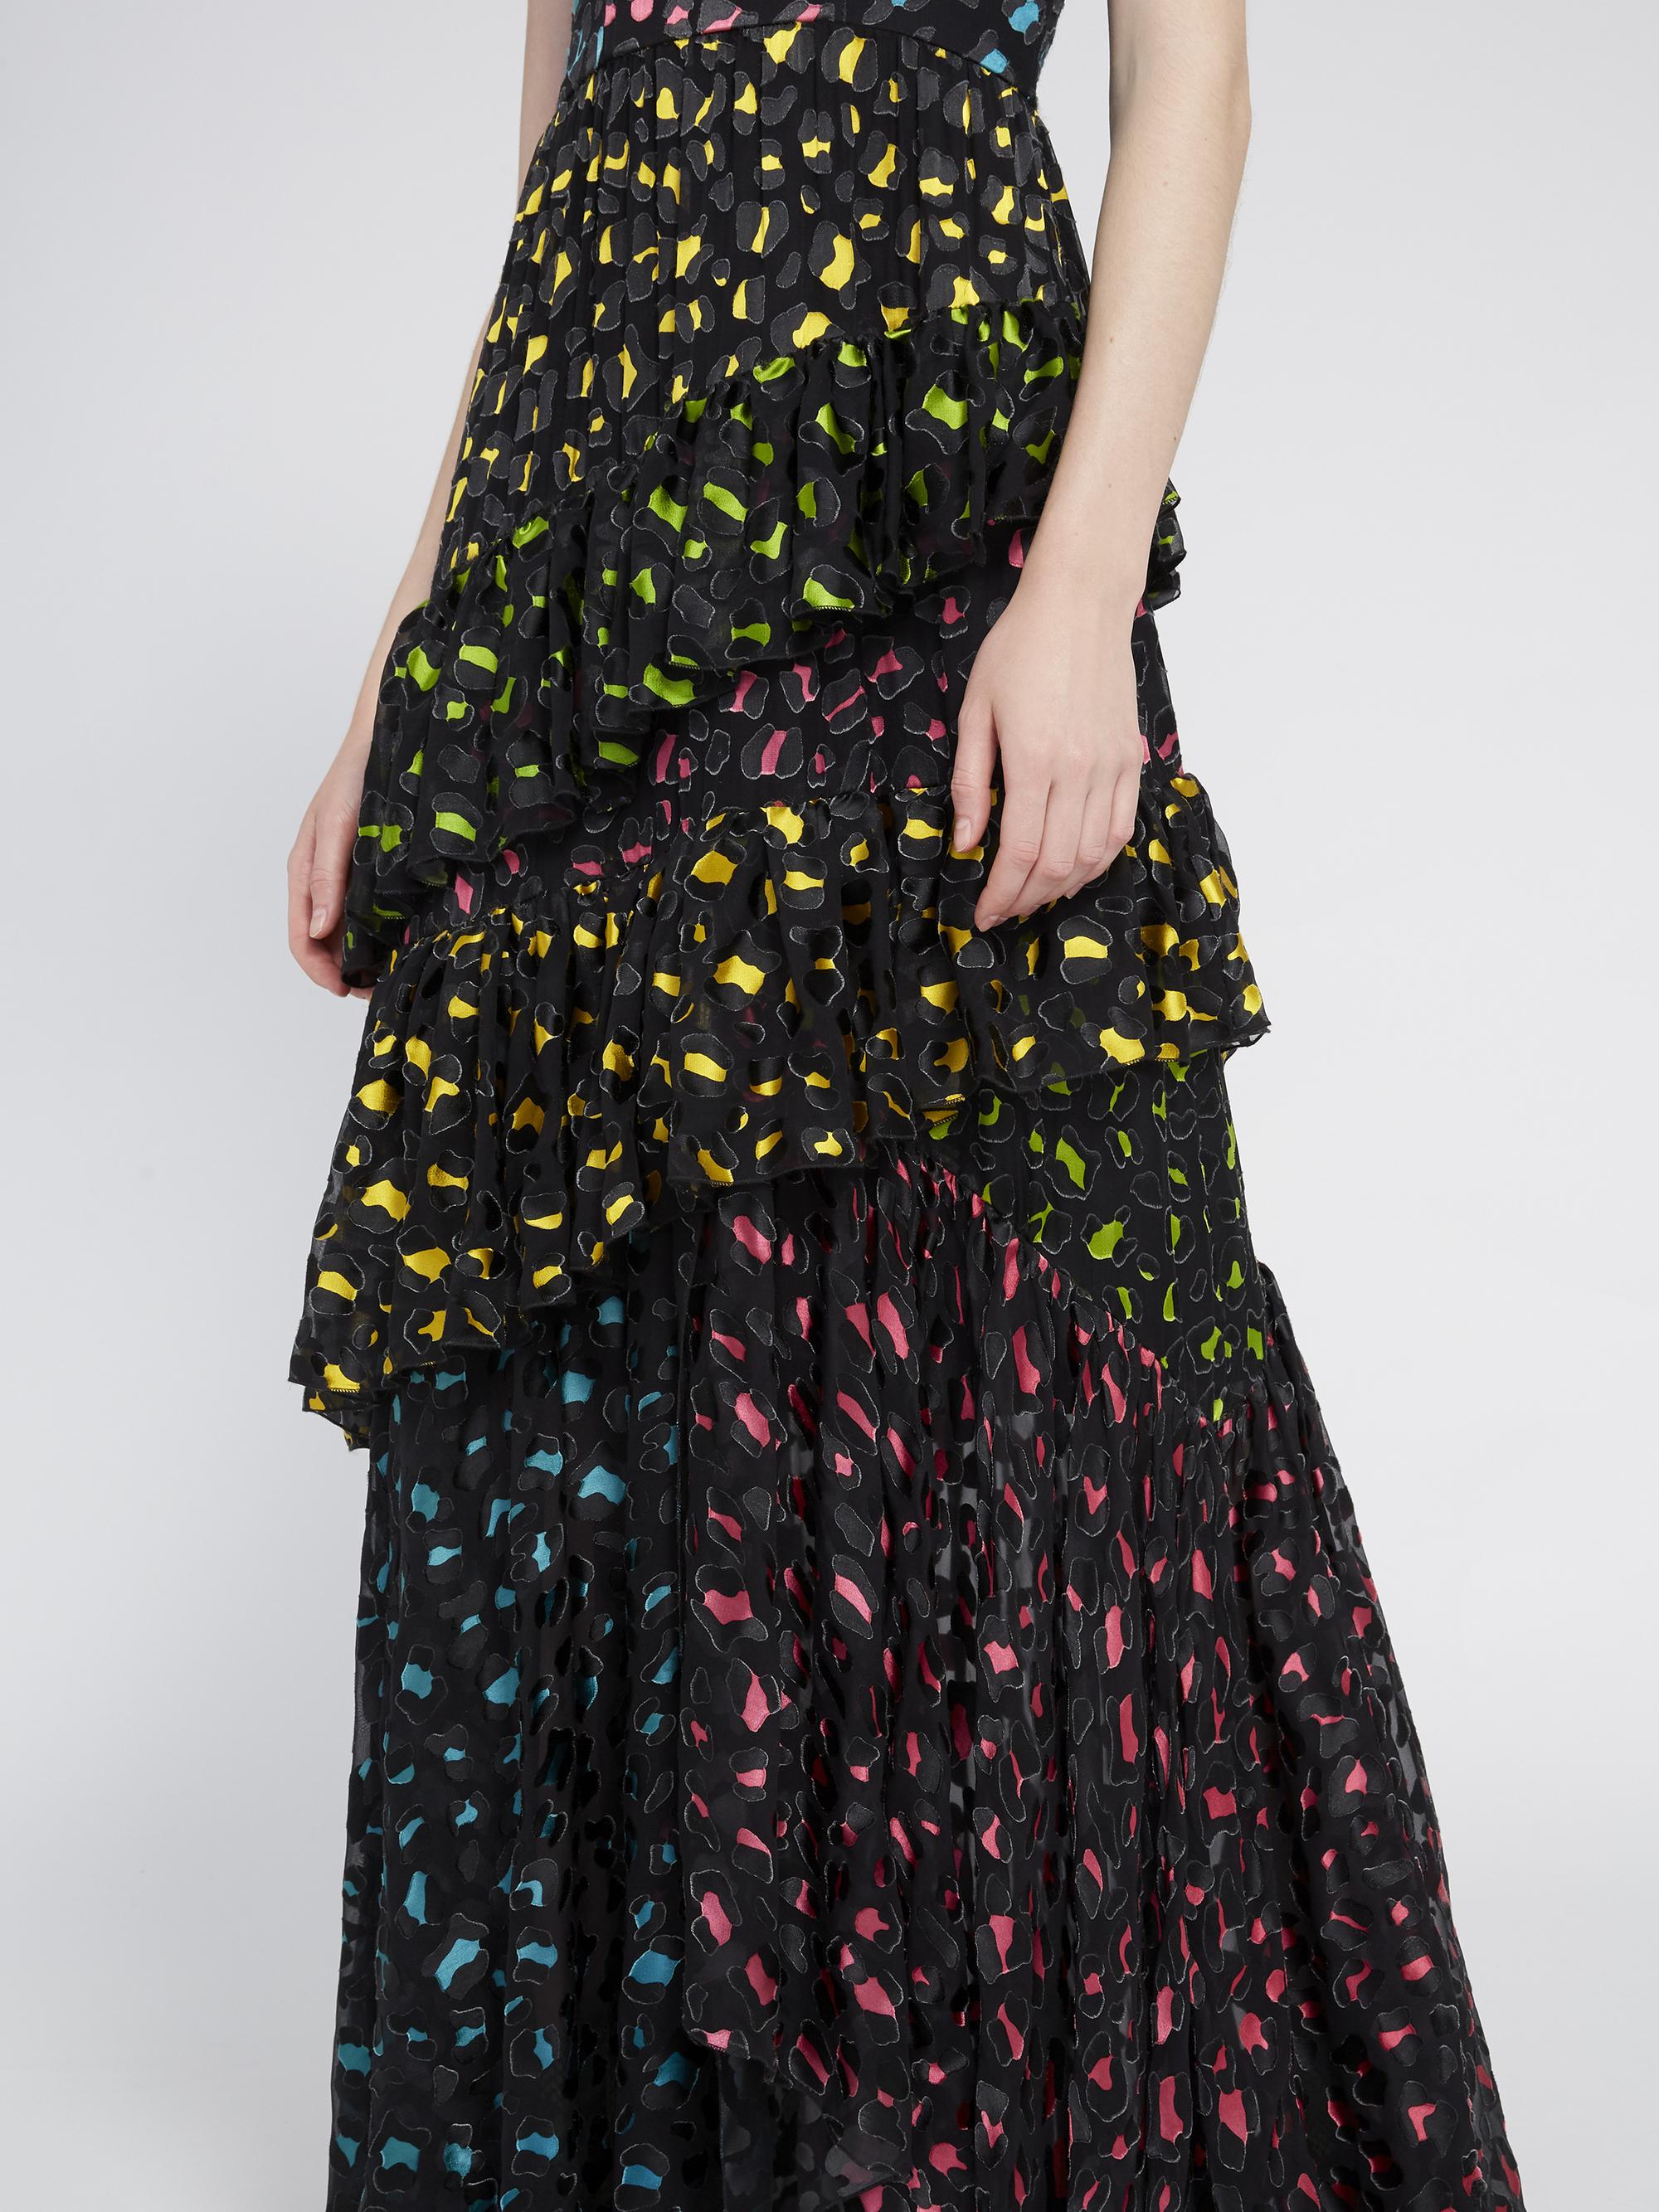 luella leopard print dress